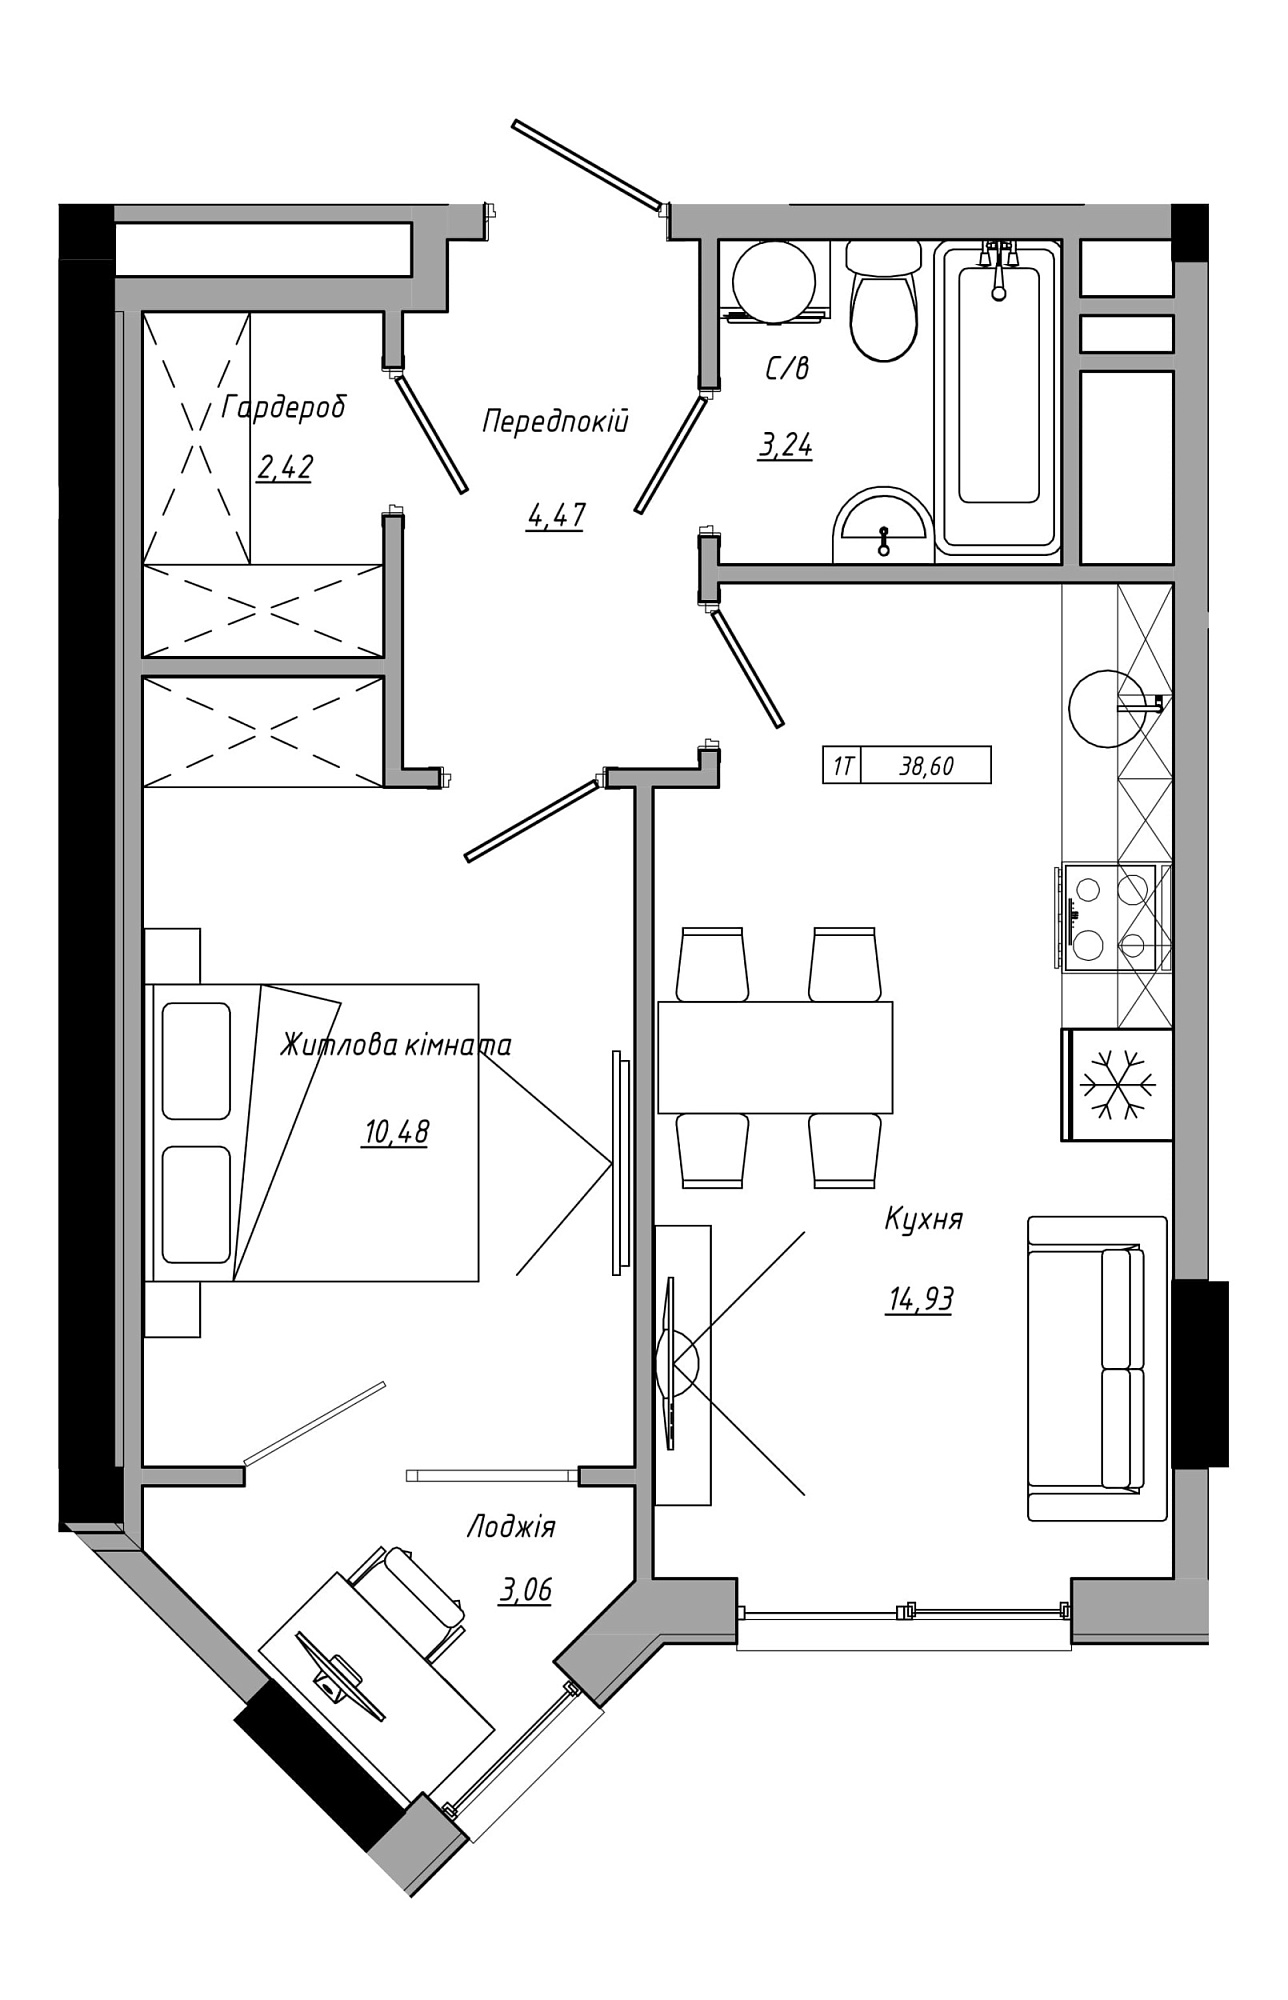 Планування 1-к квартира площею 38.6м2, AB-21-05/00022.